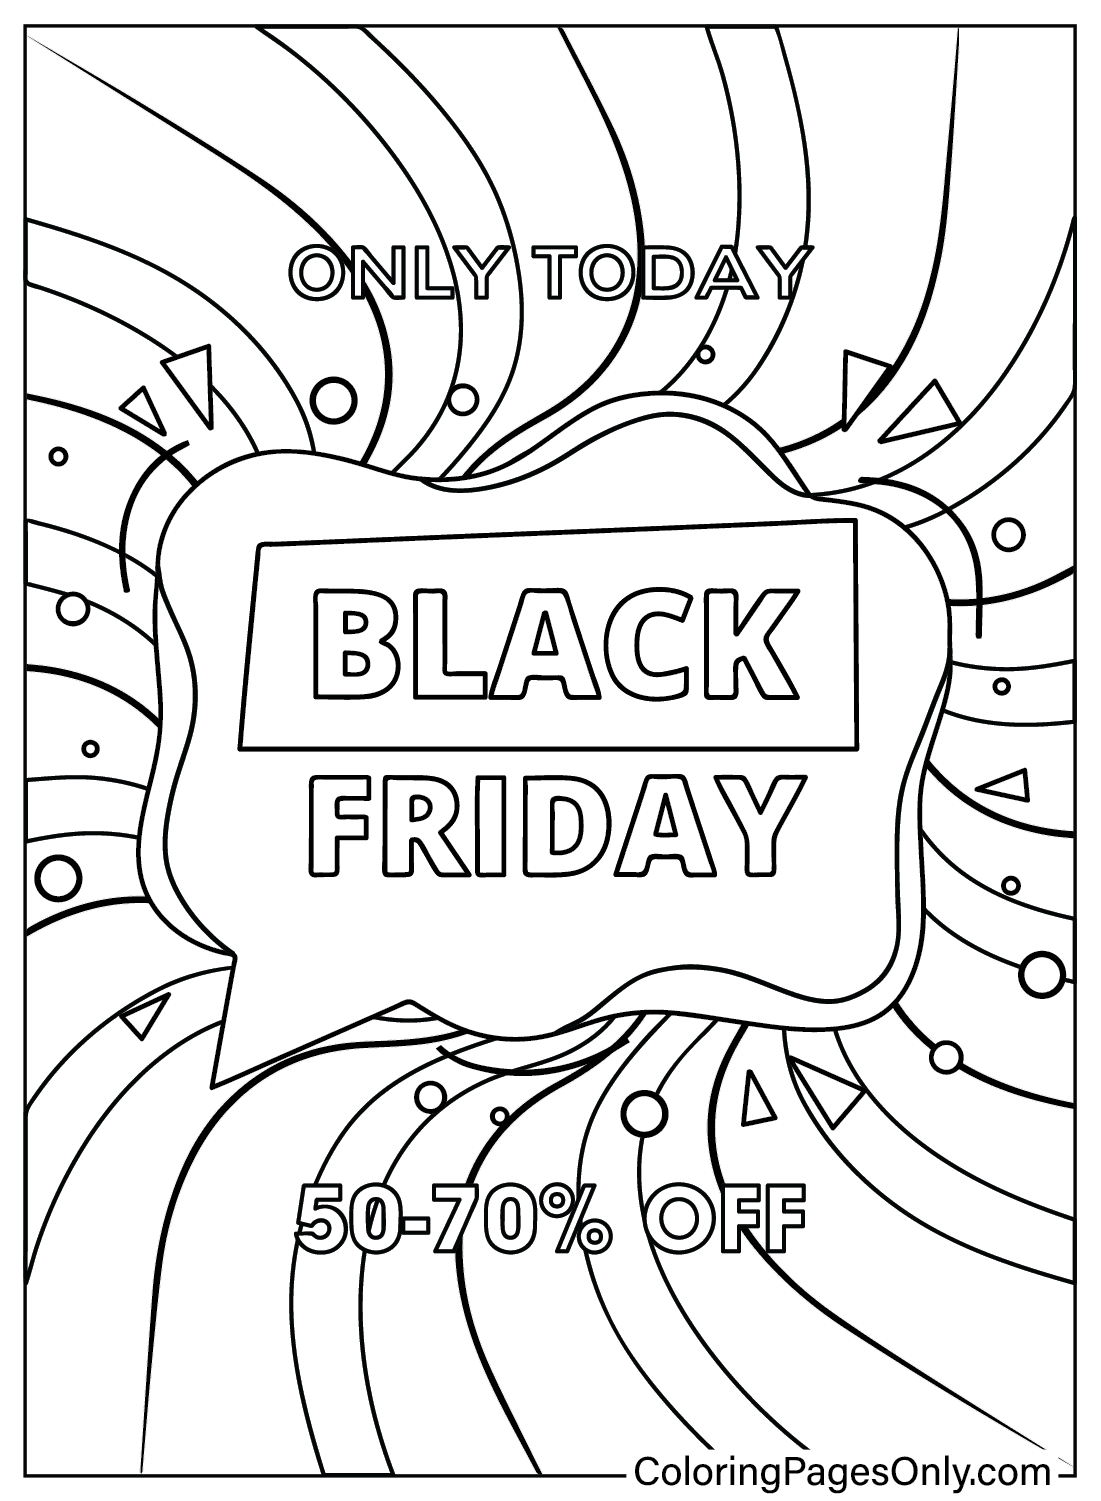 Página para colorear de Black Friday para imprimir gratis de Black Friday